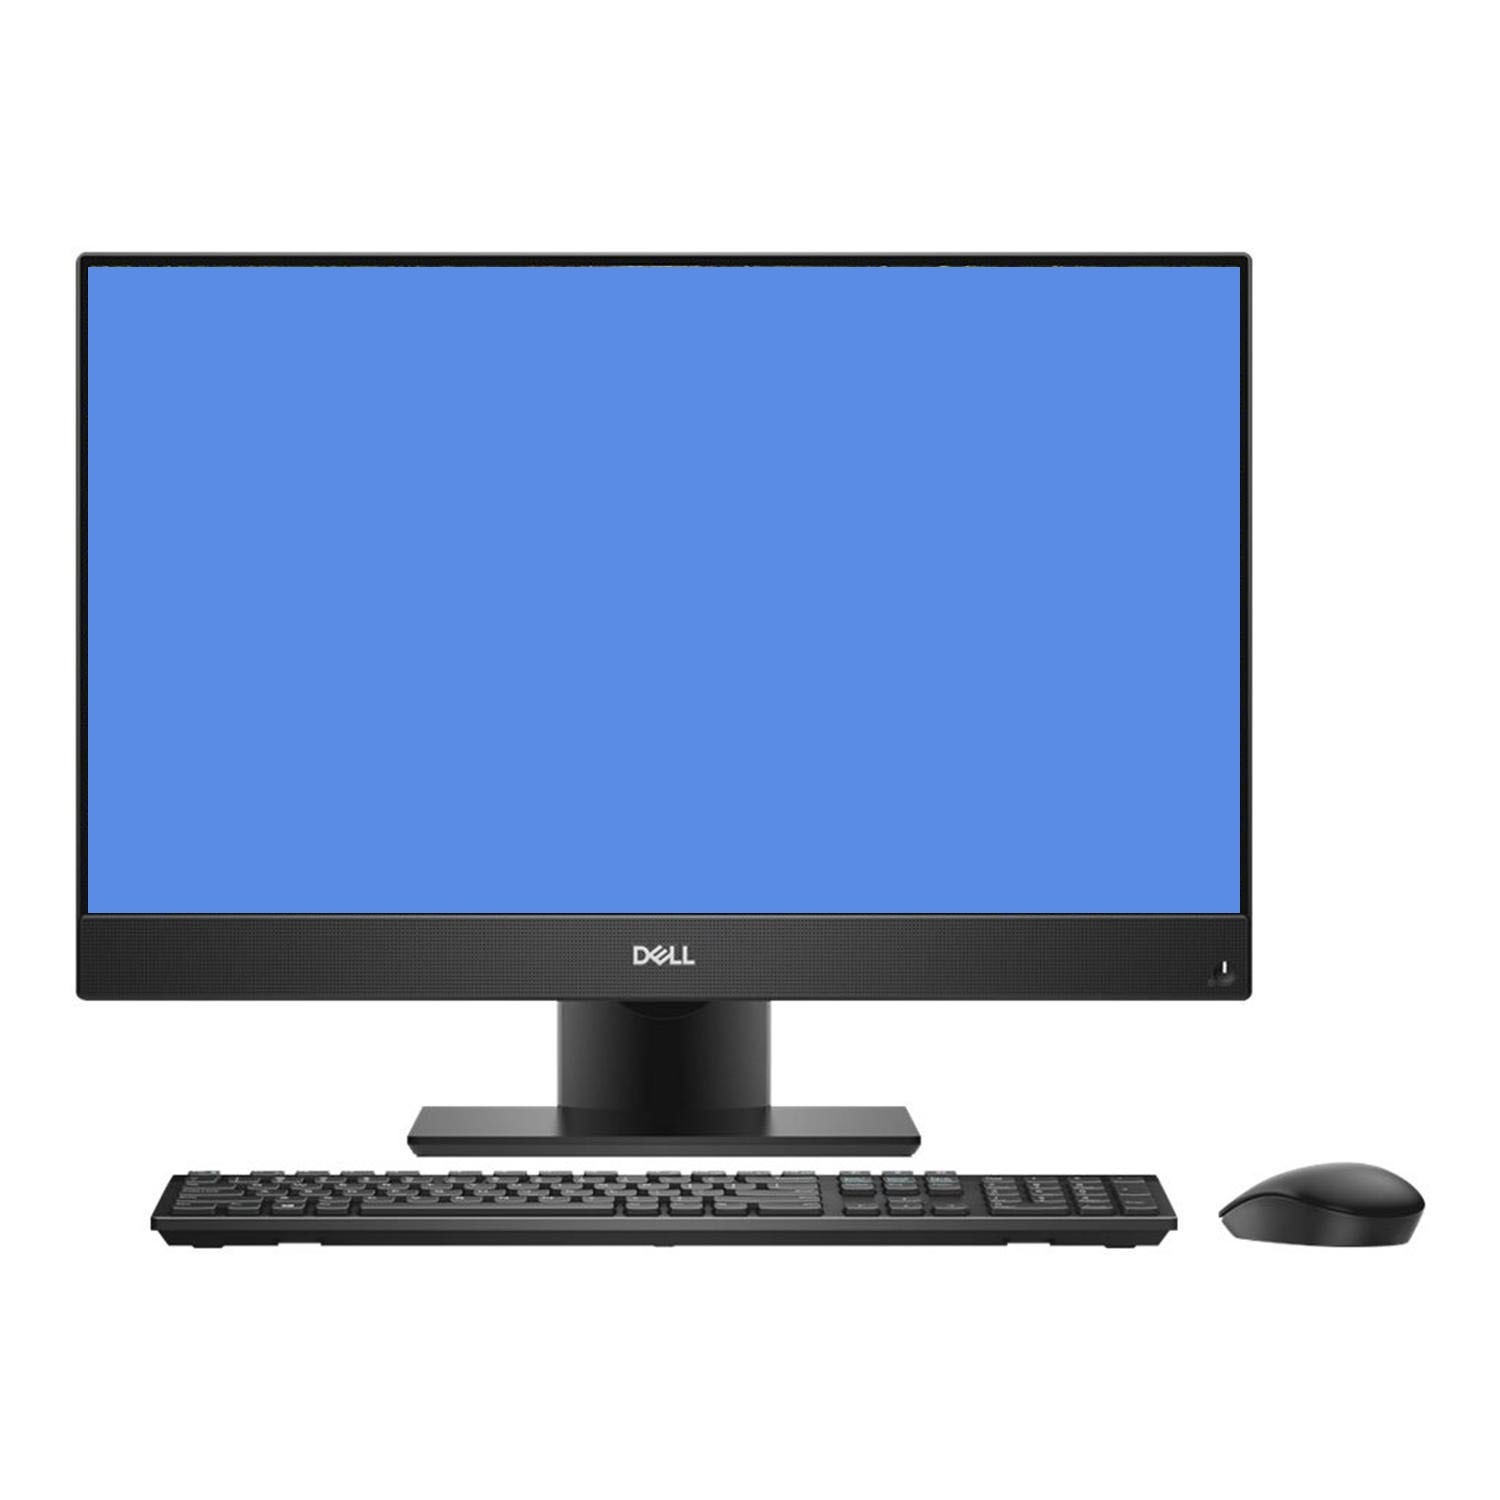 Dell OptiPlex 7460 All In One Pre-Configured Desktop PC